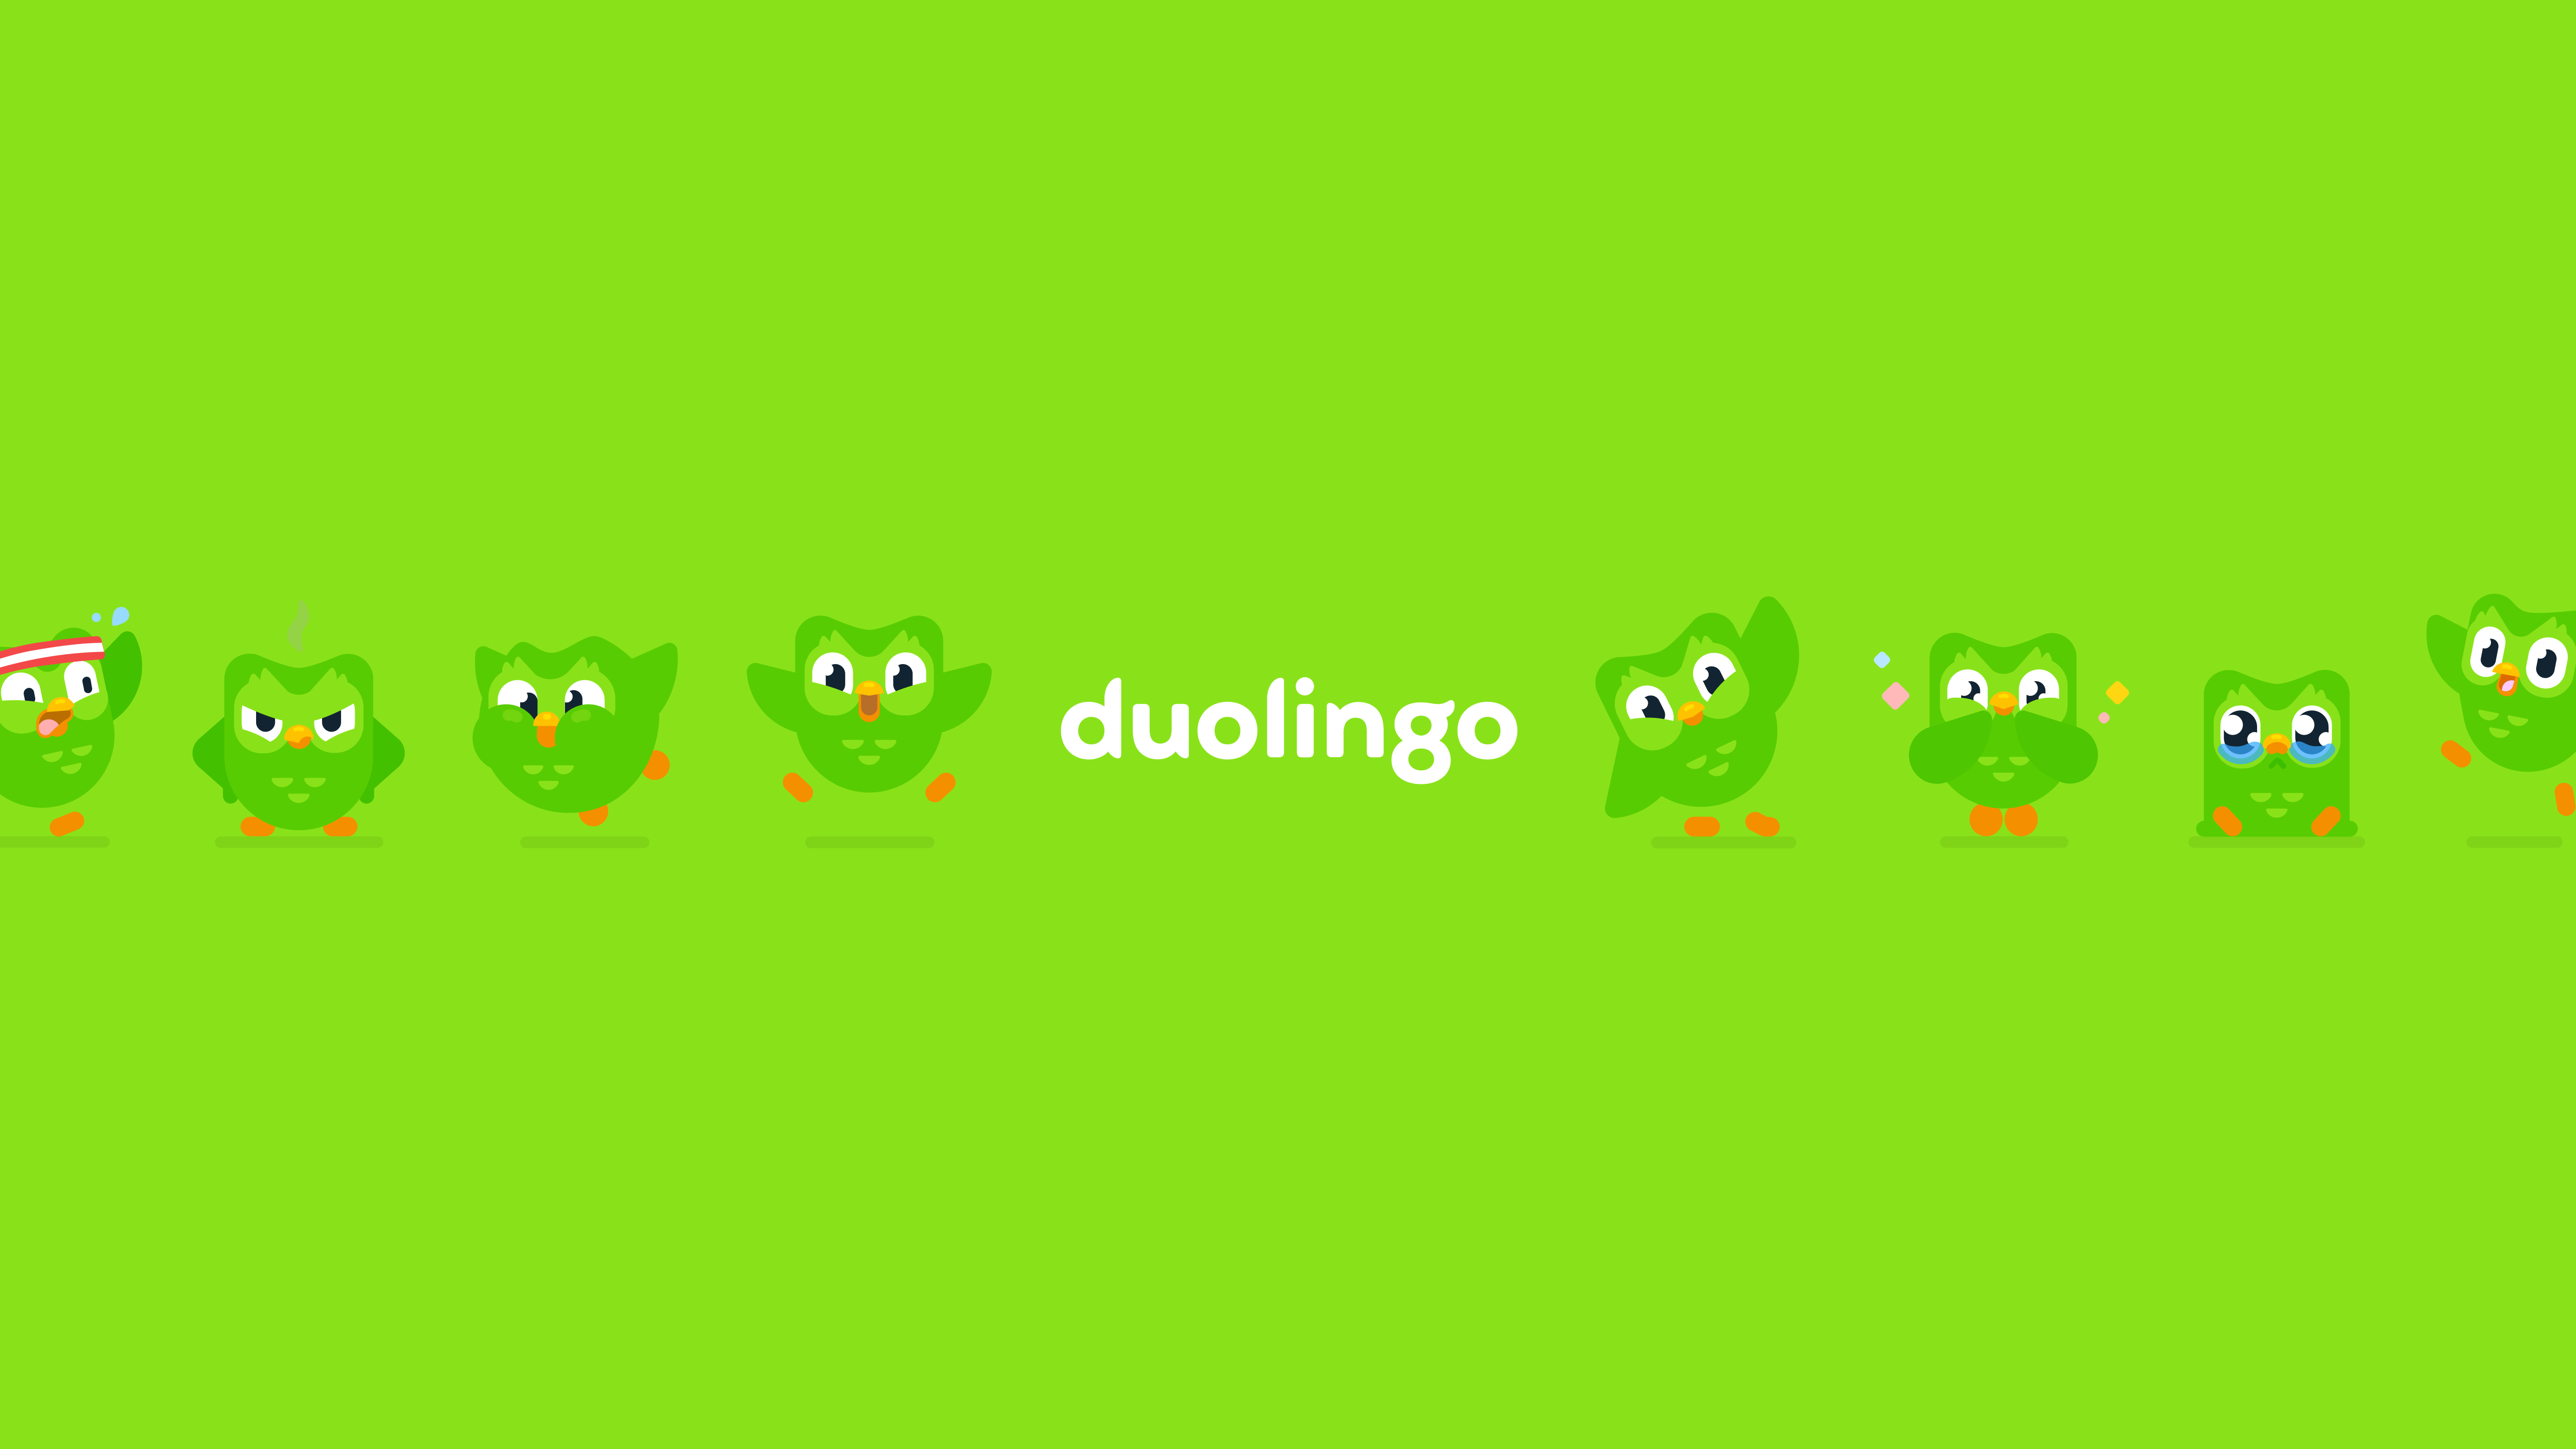 Duolingoの会社情報 - Wantedly